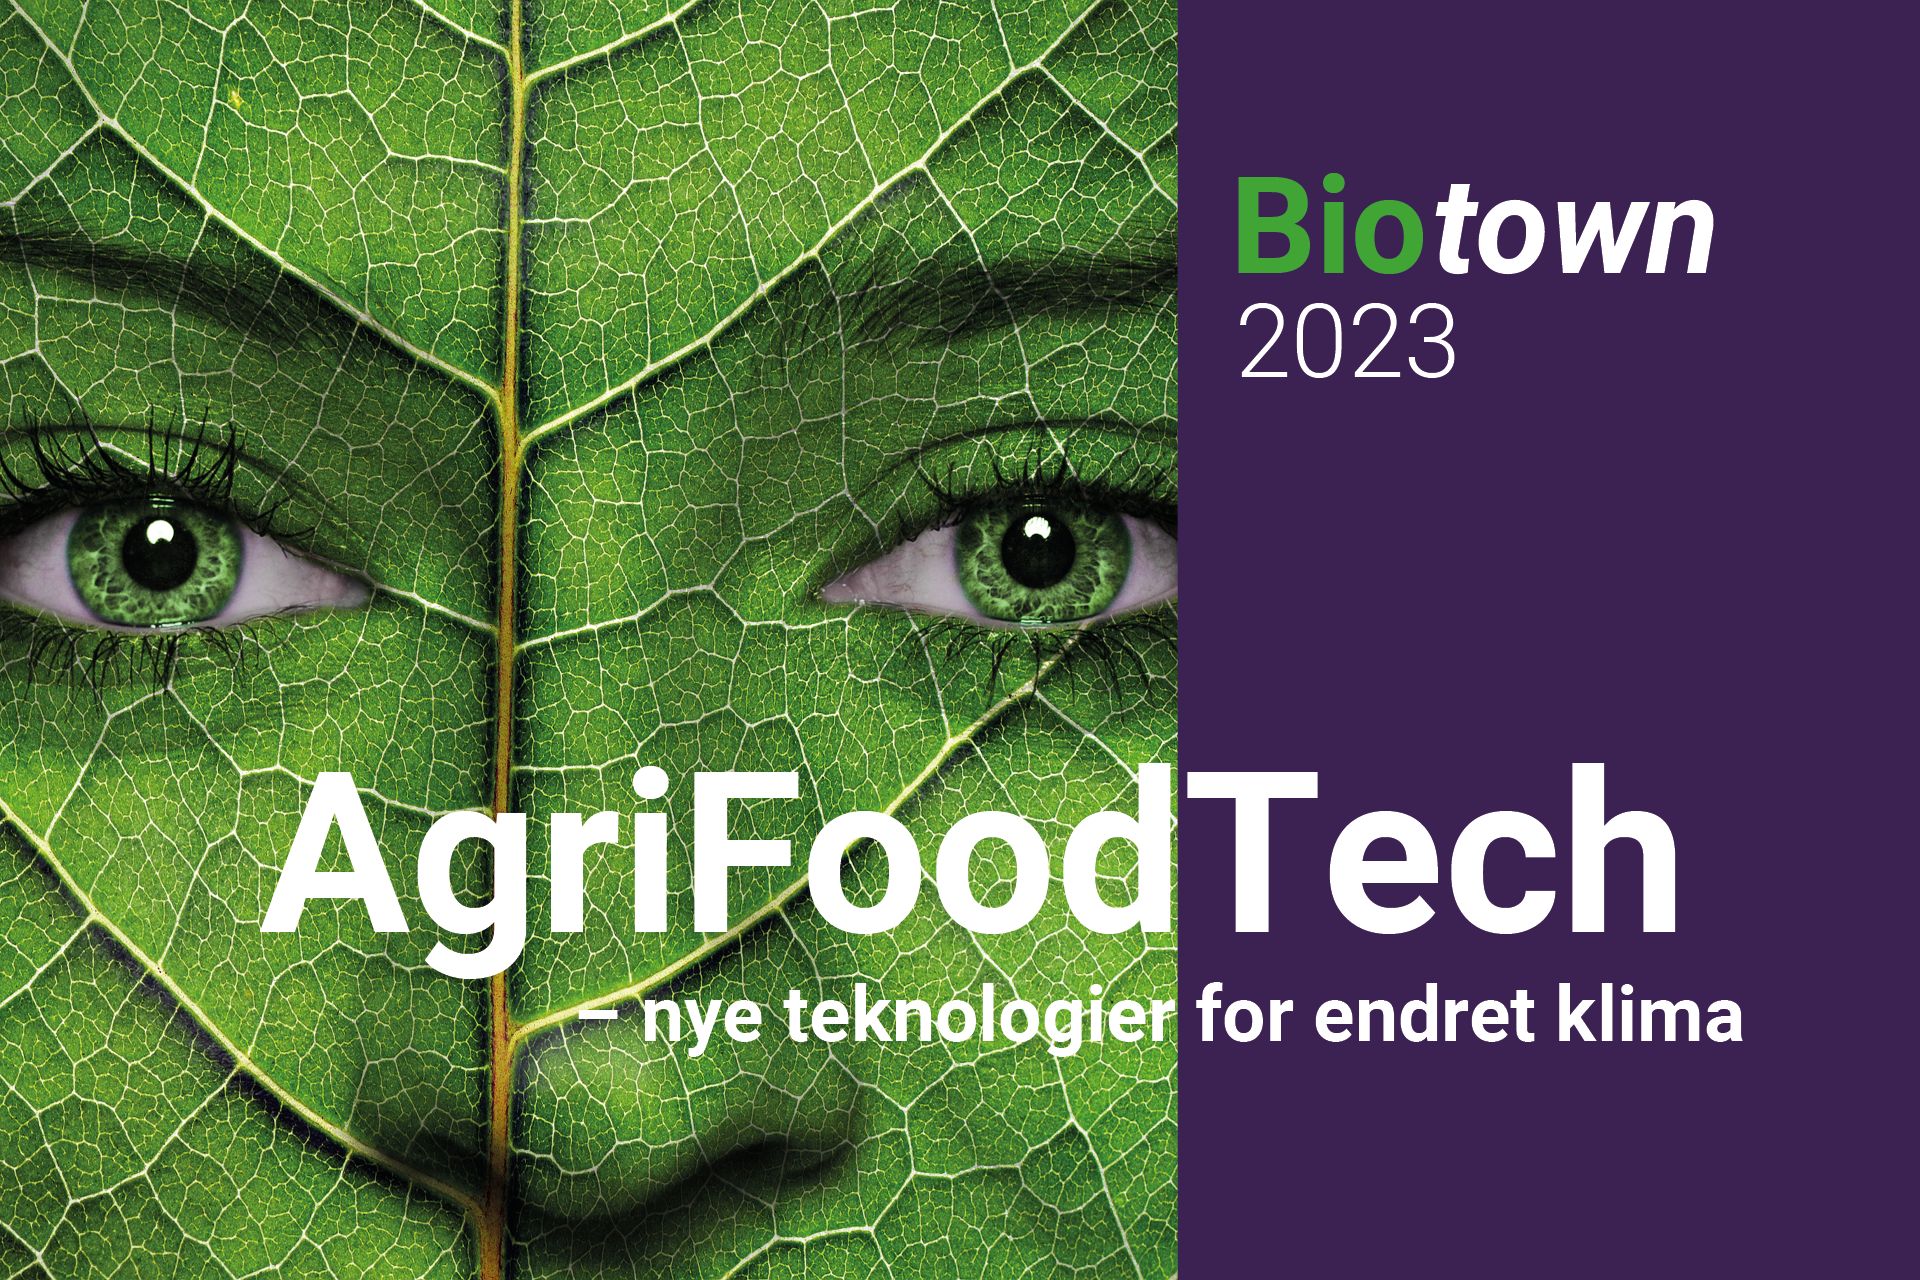 Webinar: Biotown 2023 – AgriFoodTech: Nye teknologier for endret klima